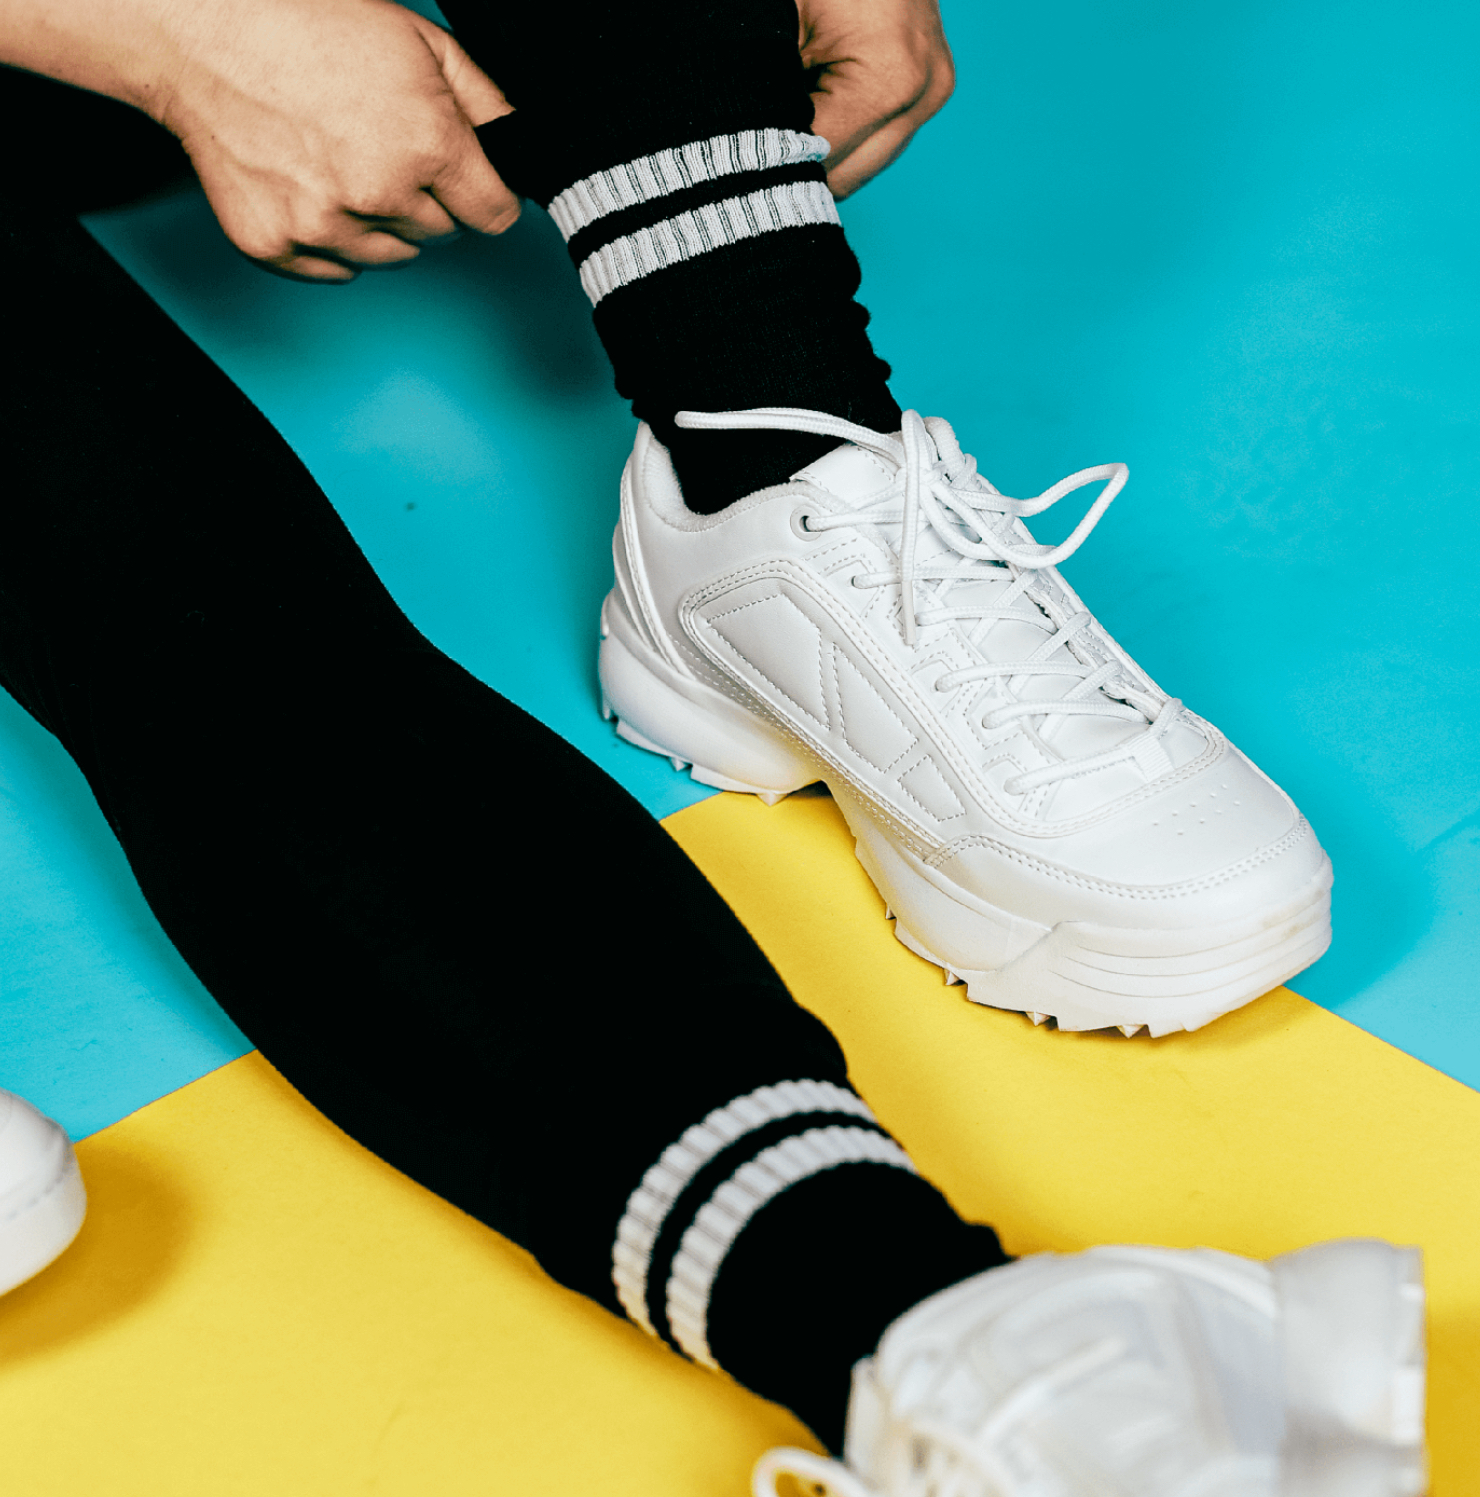 So 76 schwarze Basic Skater-Socken mit weißen Streifen 